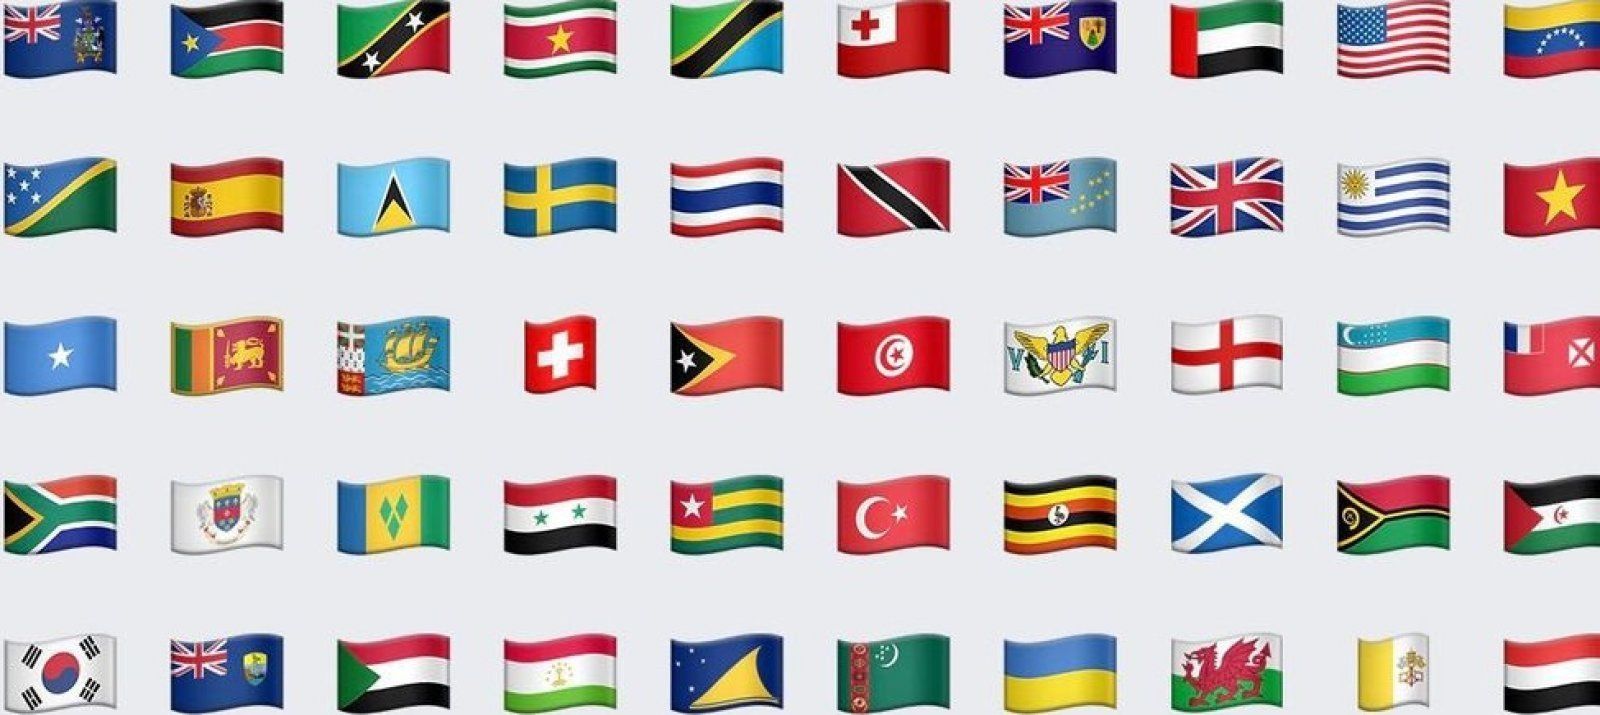 アップル 香港向けiphoneから台湾国旗の絵文字を削除 中国政府への配慮か